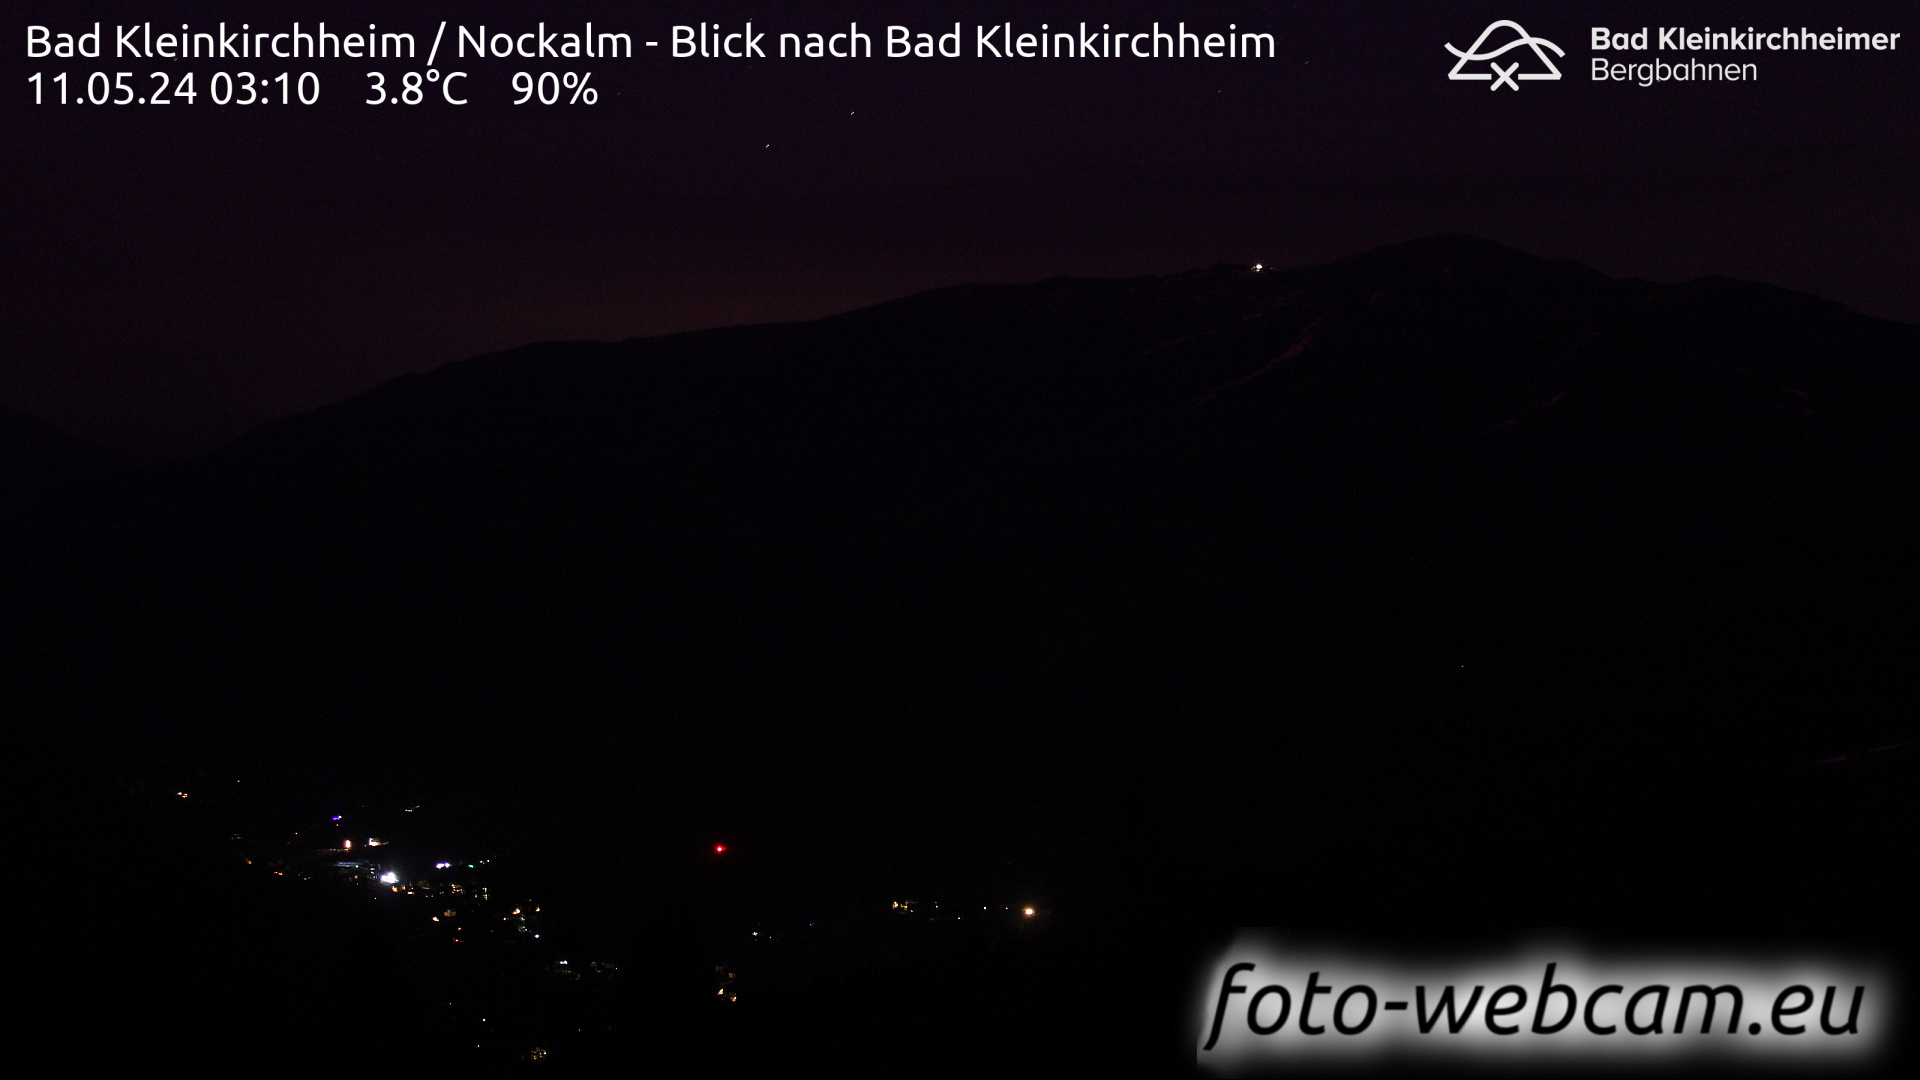 Bad Kleinkirchheim Fr. 03:17